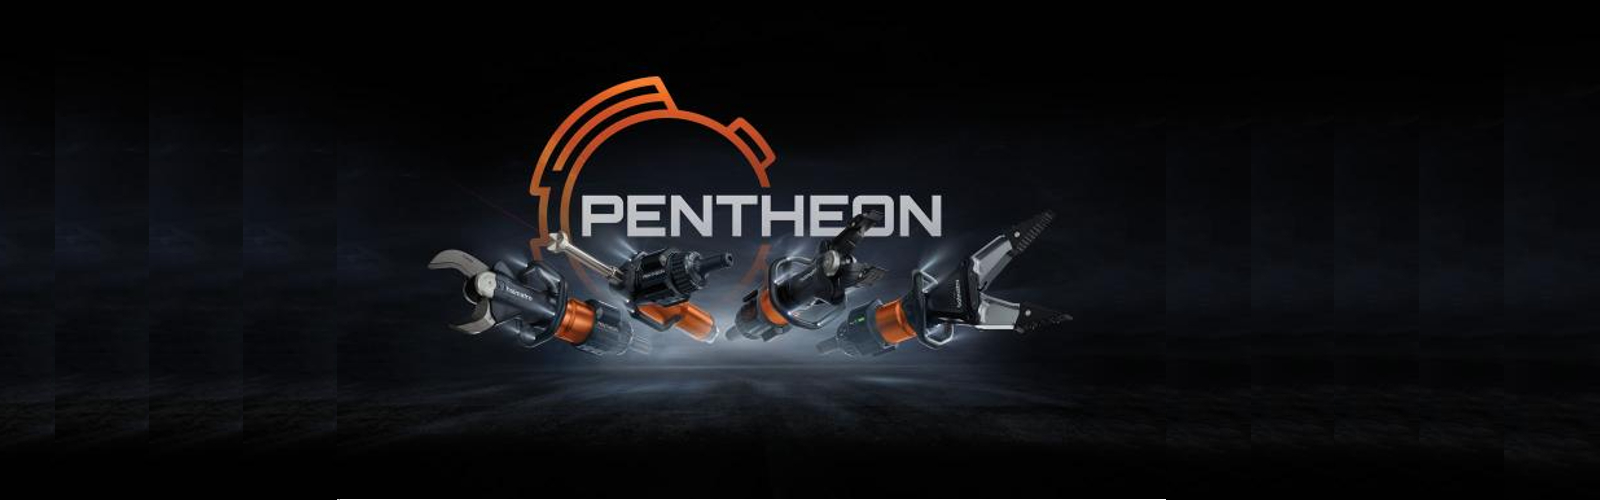 Bộ thiết bị Pentheon